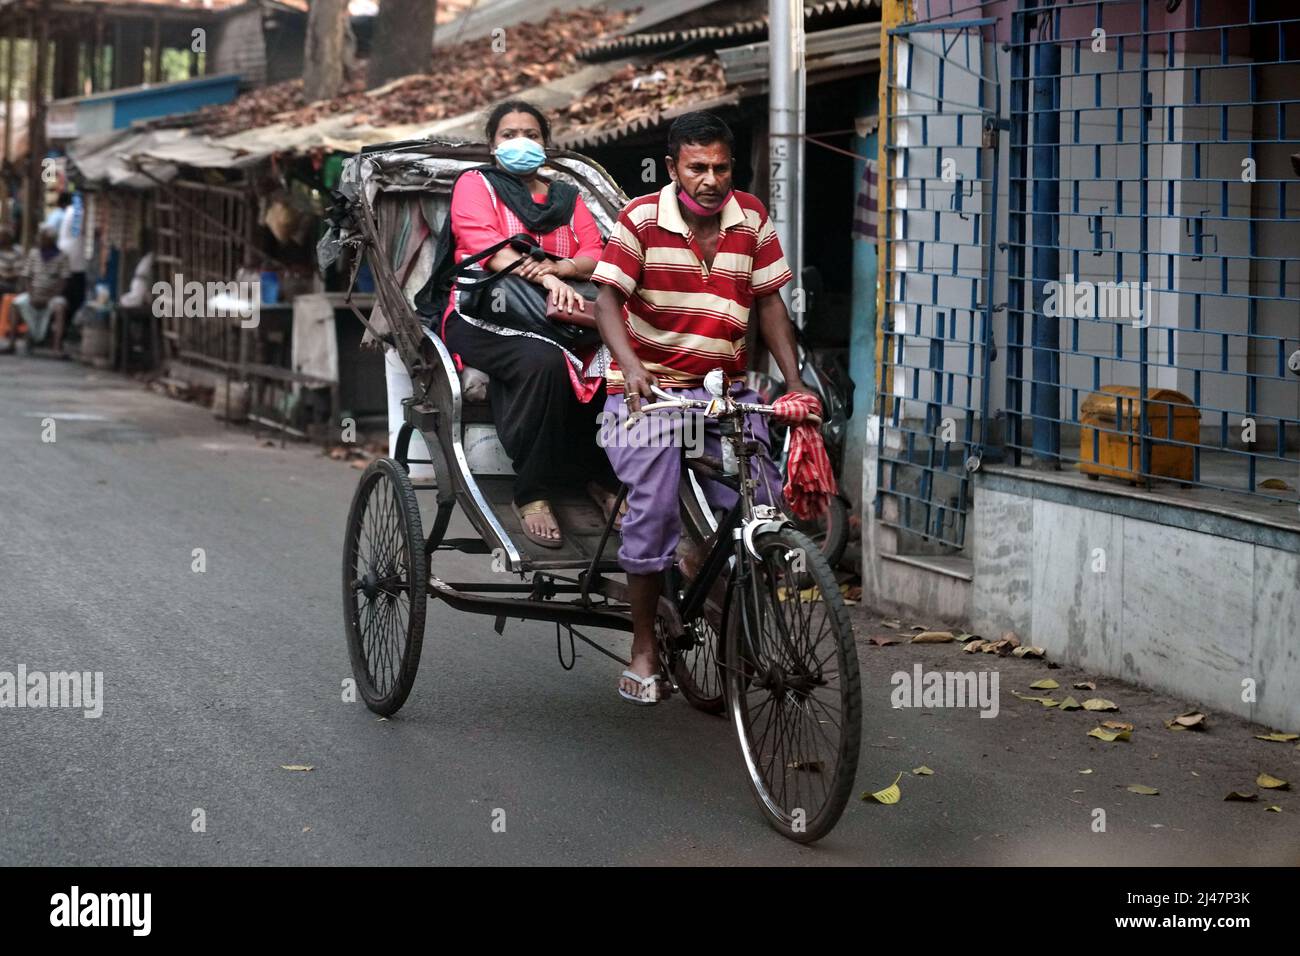 Passager sur un tricycle, scène de rue à Baruipur près de Kolkata, Inde Banque D'Images